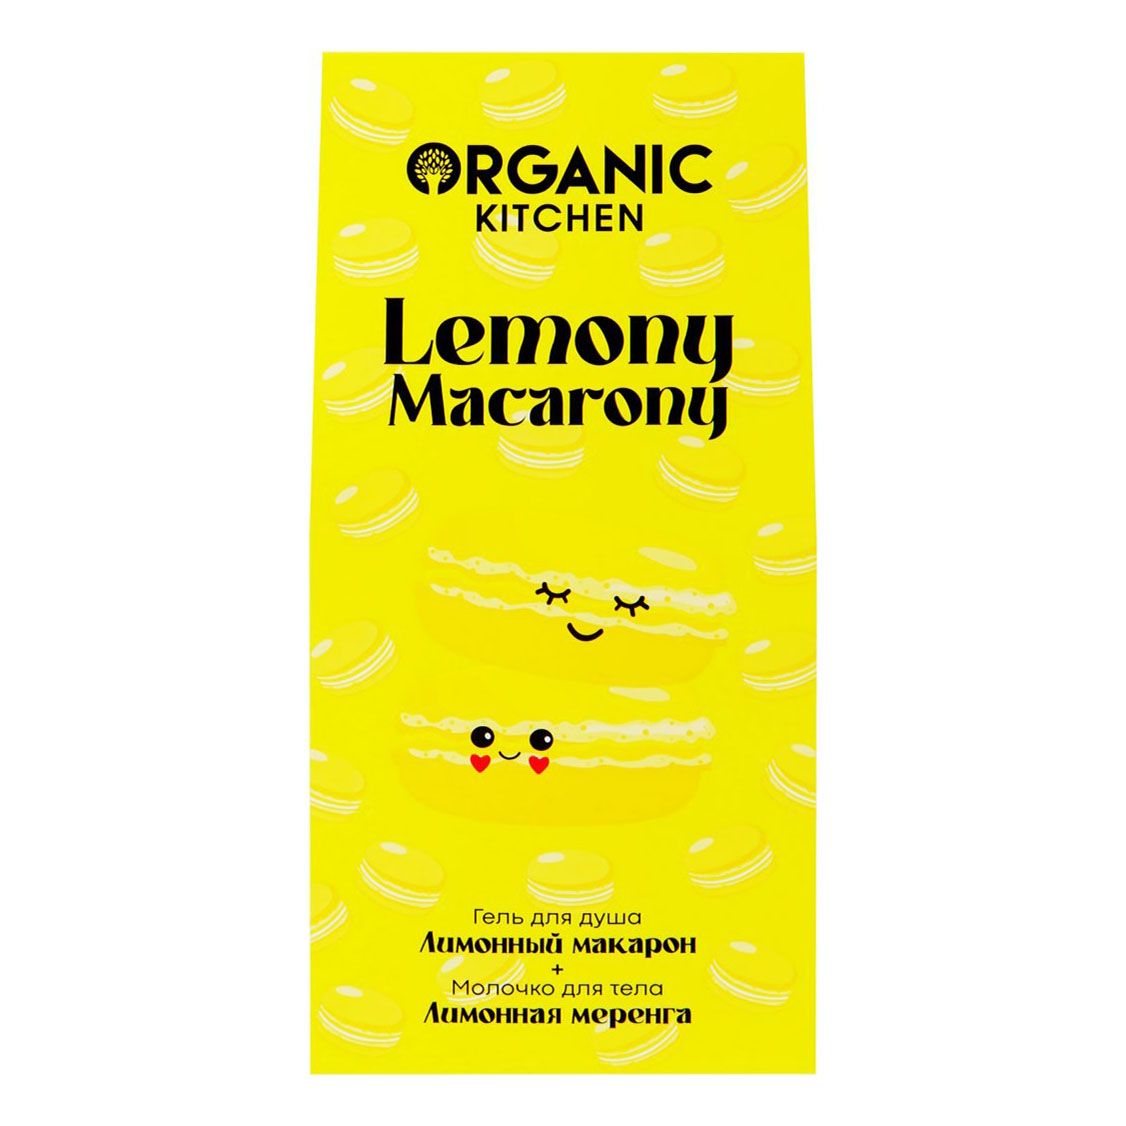 Набор косметики для тела Organic Kitchen Lemony Macarony для женщин 2 предмета набор салфеток этель kitchen оранжевый 30х40 см 2 шт 100% хлопок саржа 220 г м2